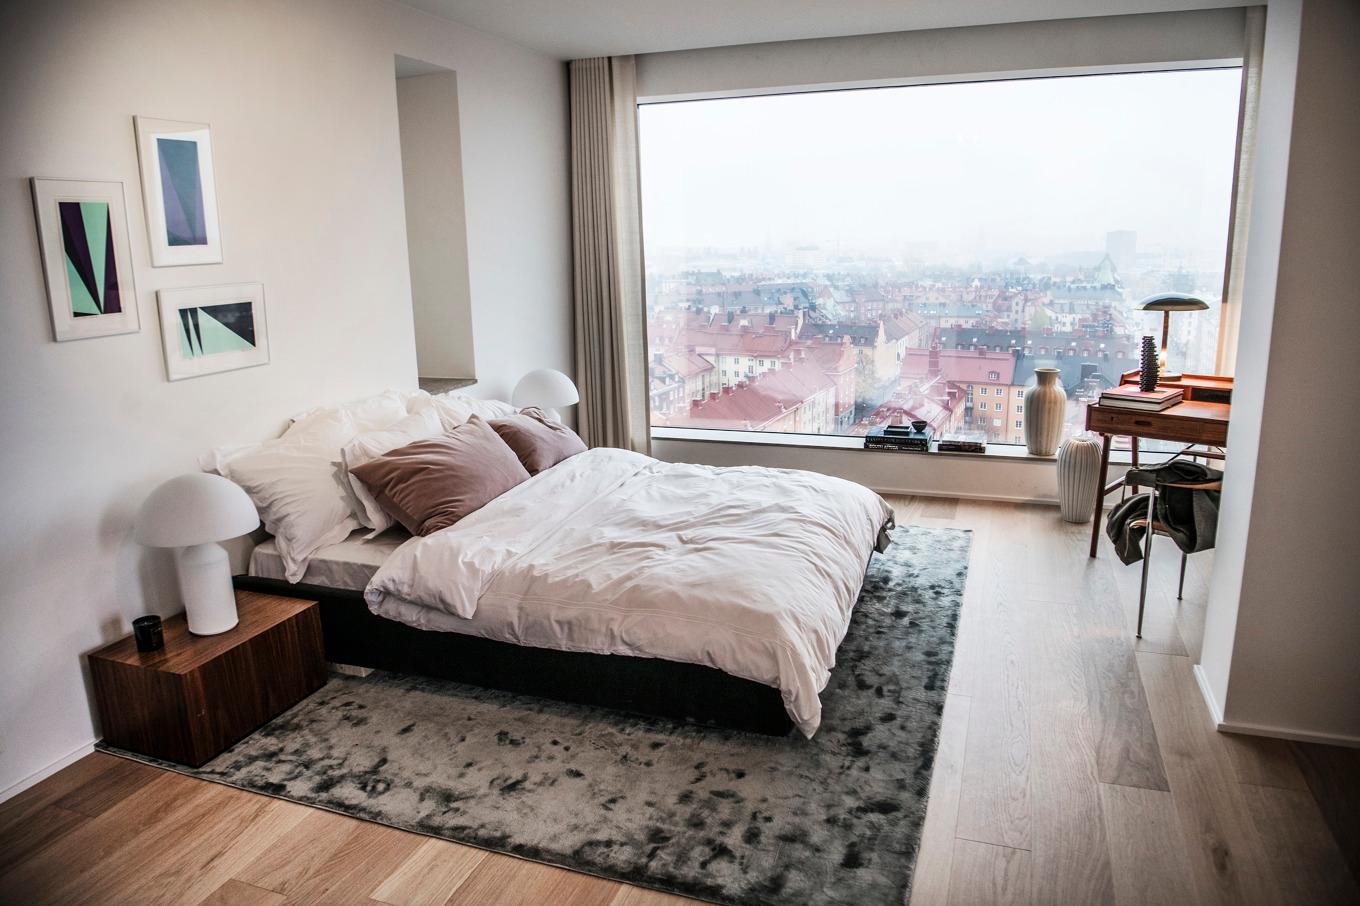 Mäklarfirman utmärkte sig för sina försäljningar av lyxiga lägenheter i Stockholms innerstad. Arkivbild. Foto: Tomas Oneborg/SvD/TT